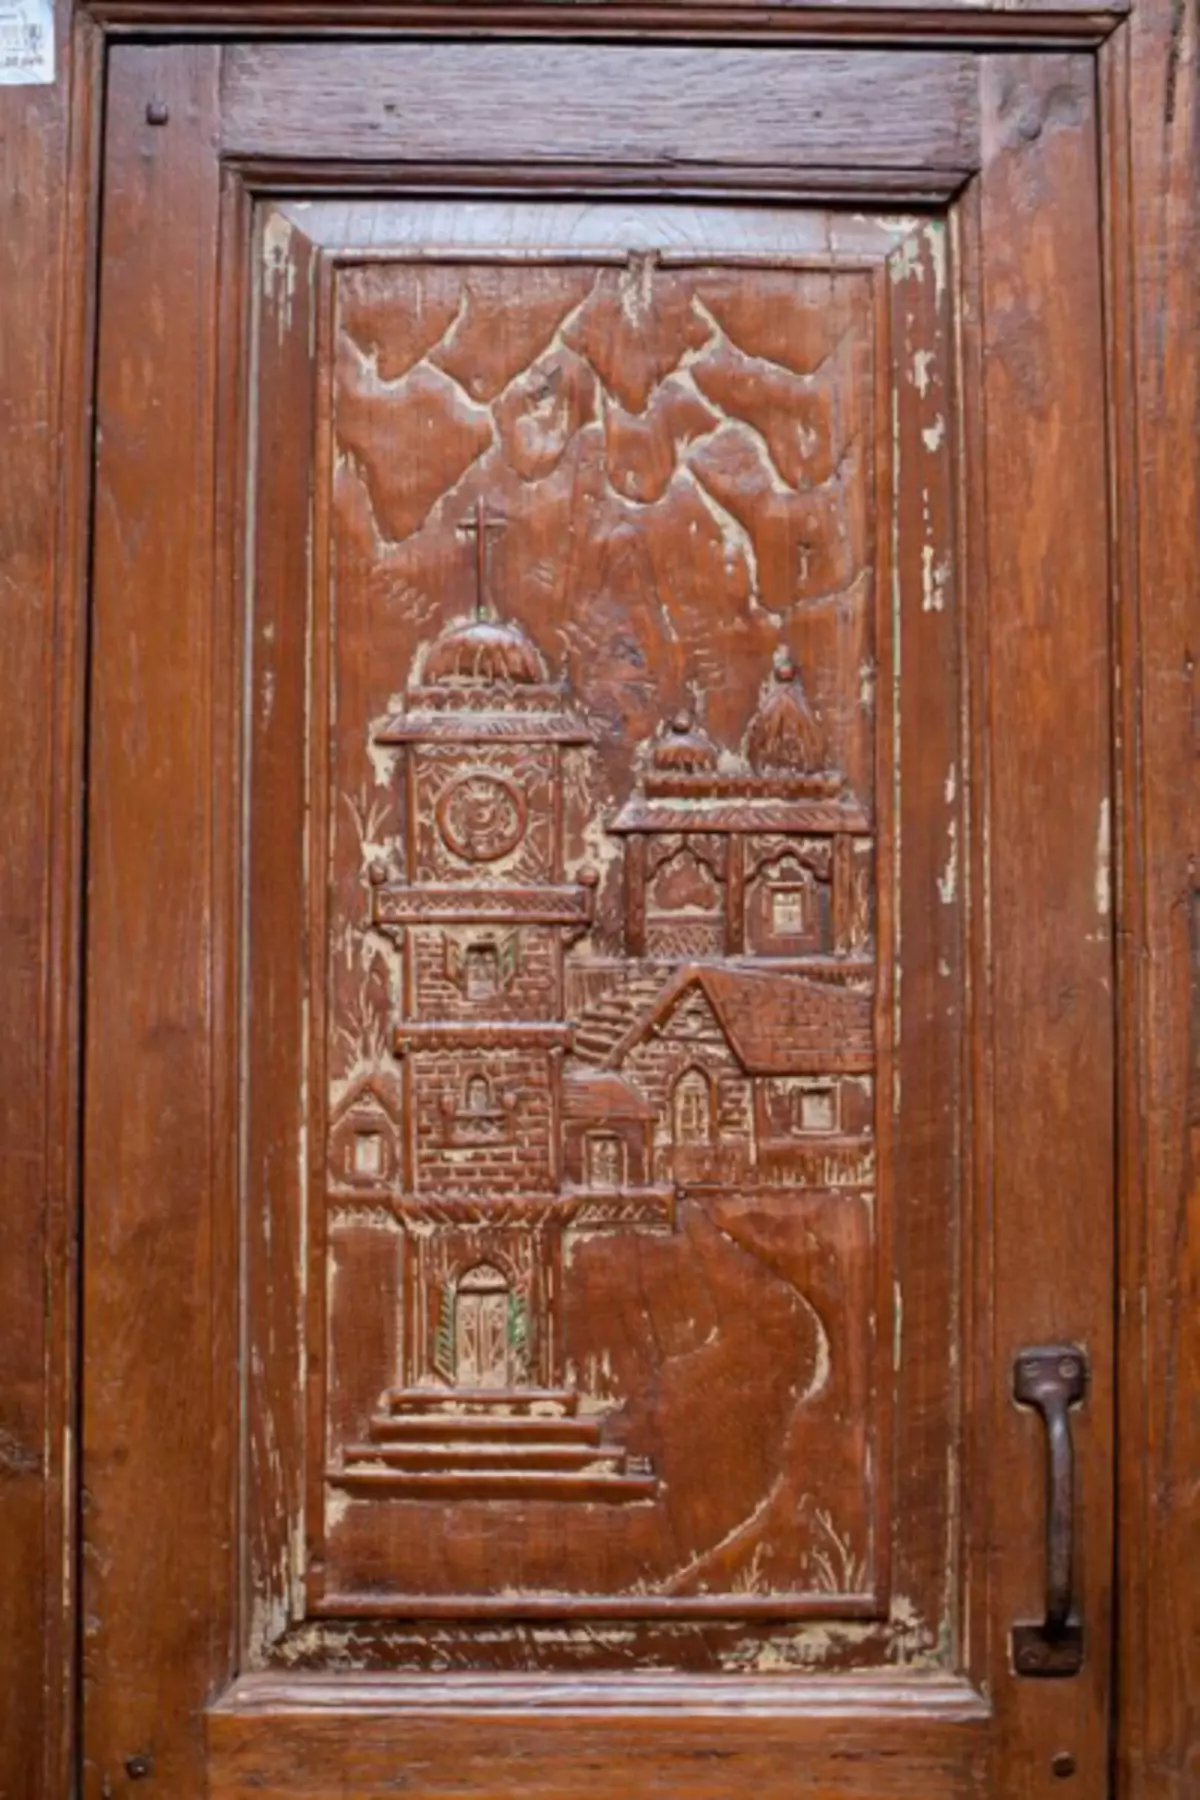 Alegeți spre interiorul ușii sculptate din lemn